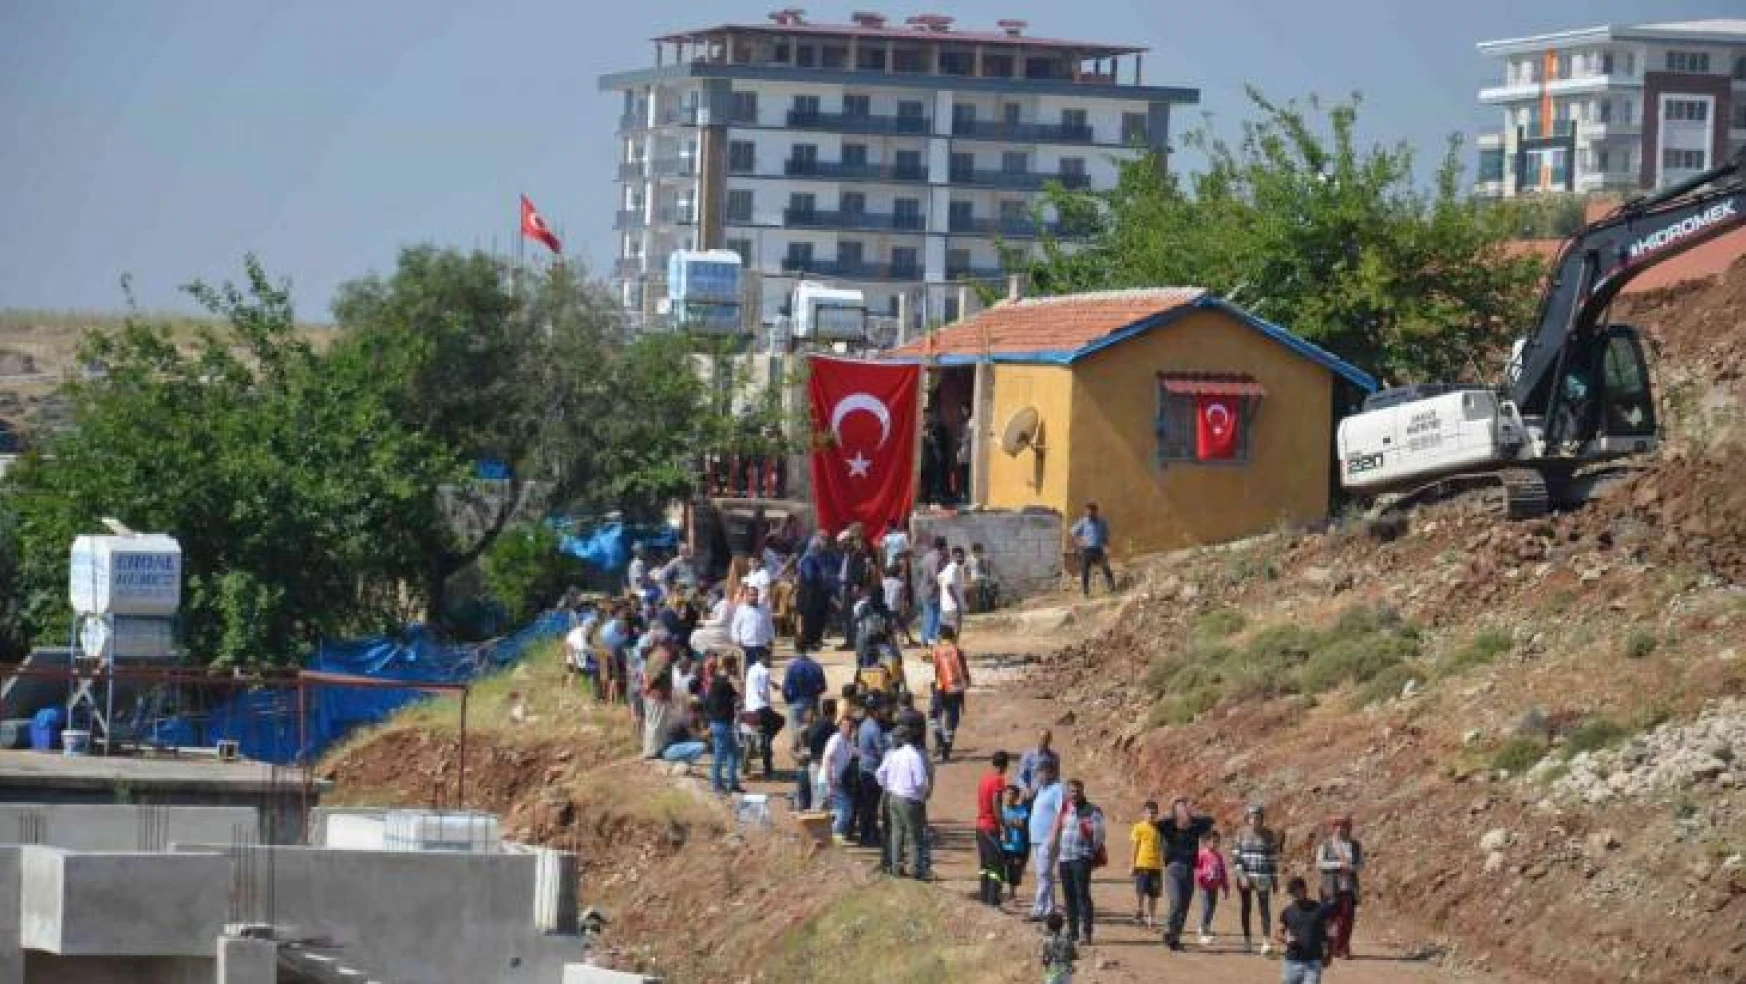 Şehidin evine Türk Bayrağı asıldı